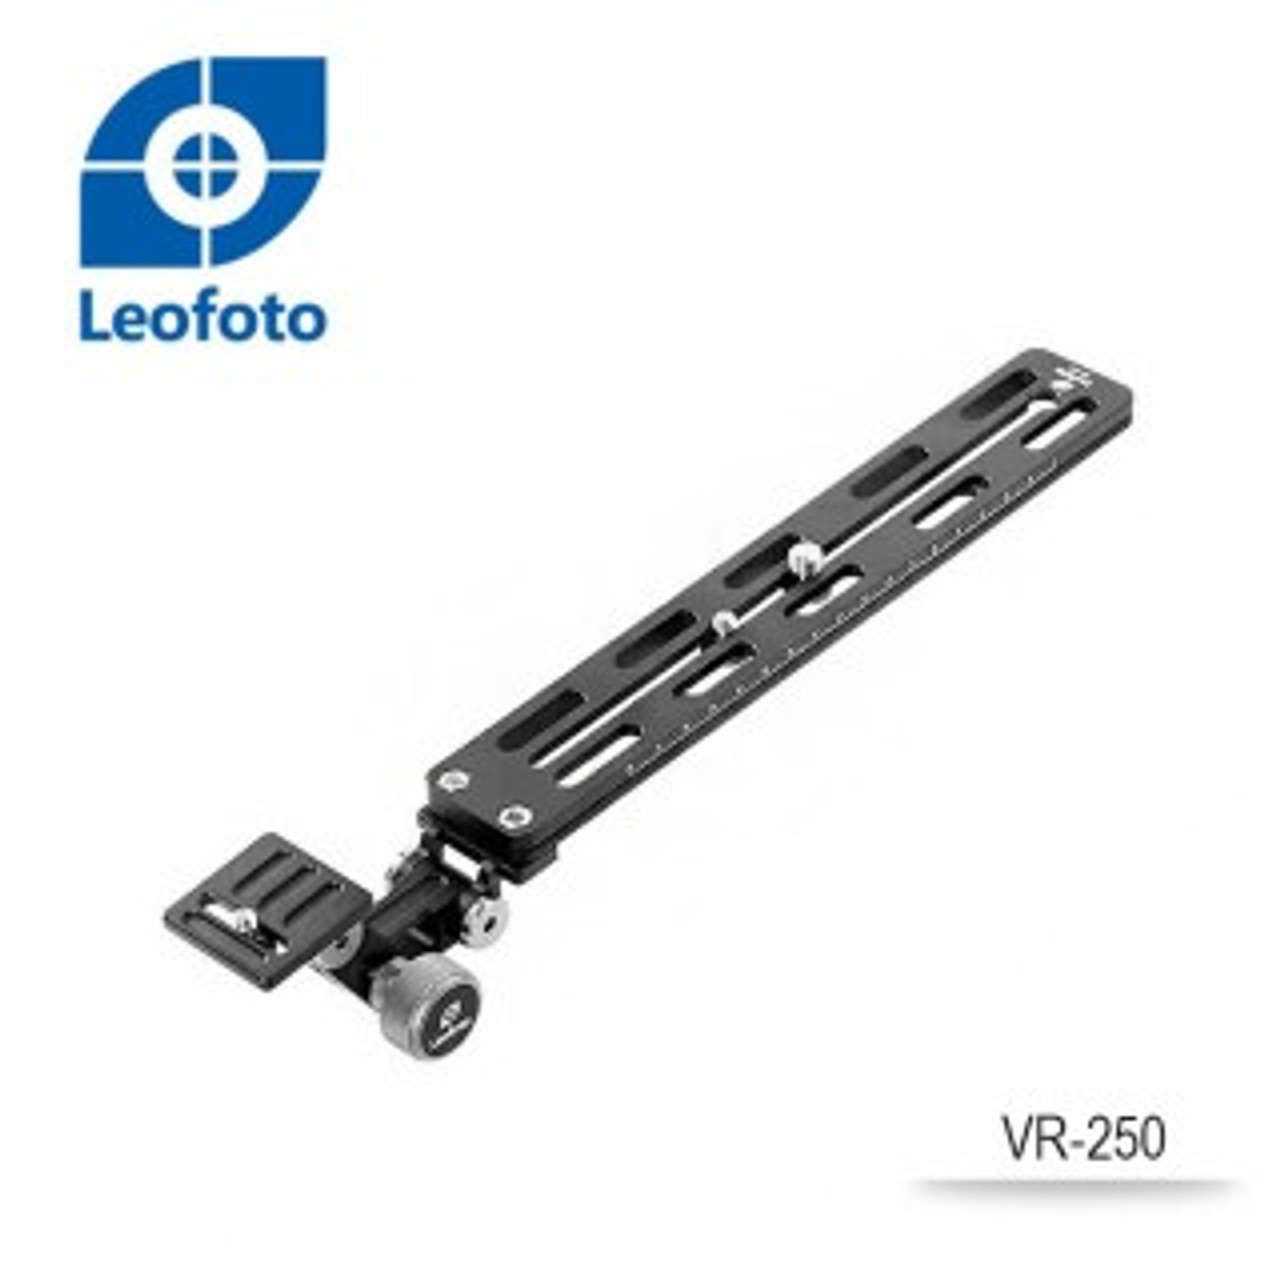 Leofoto VR-250 Lens Support-